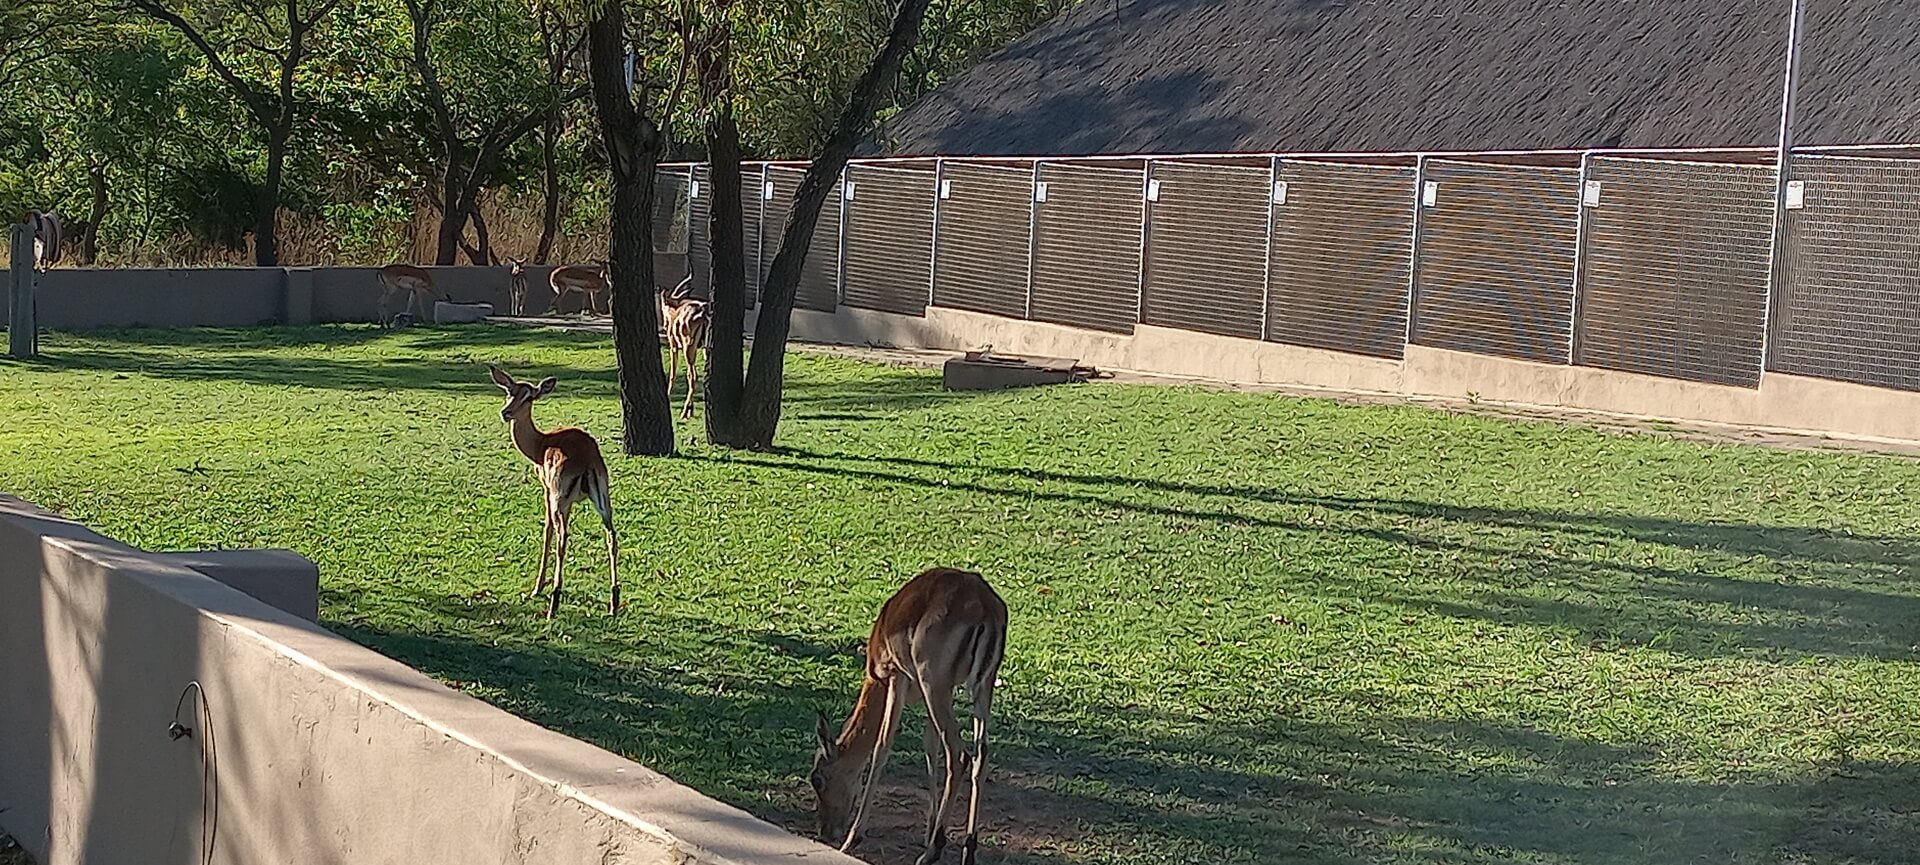 De impala's grazen naast de kennels van de honden.